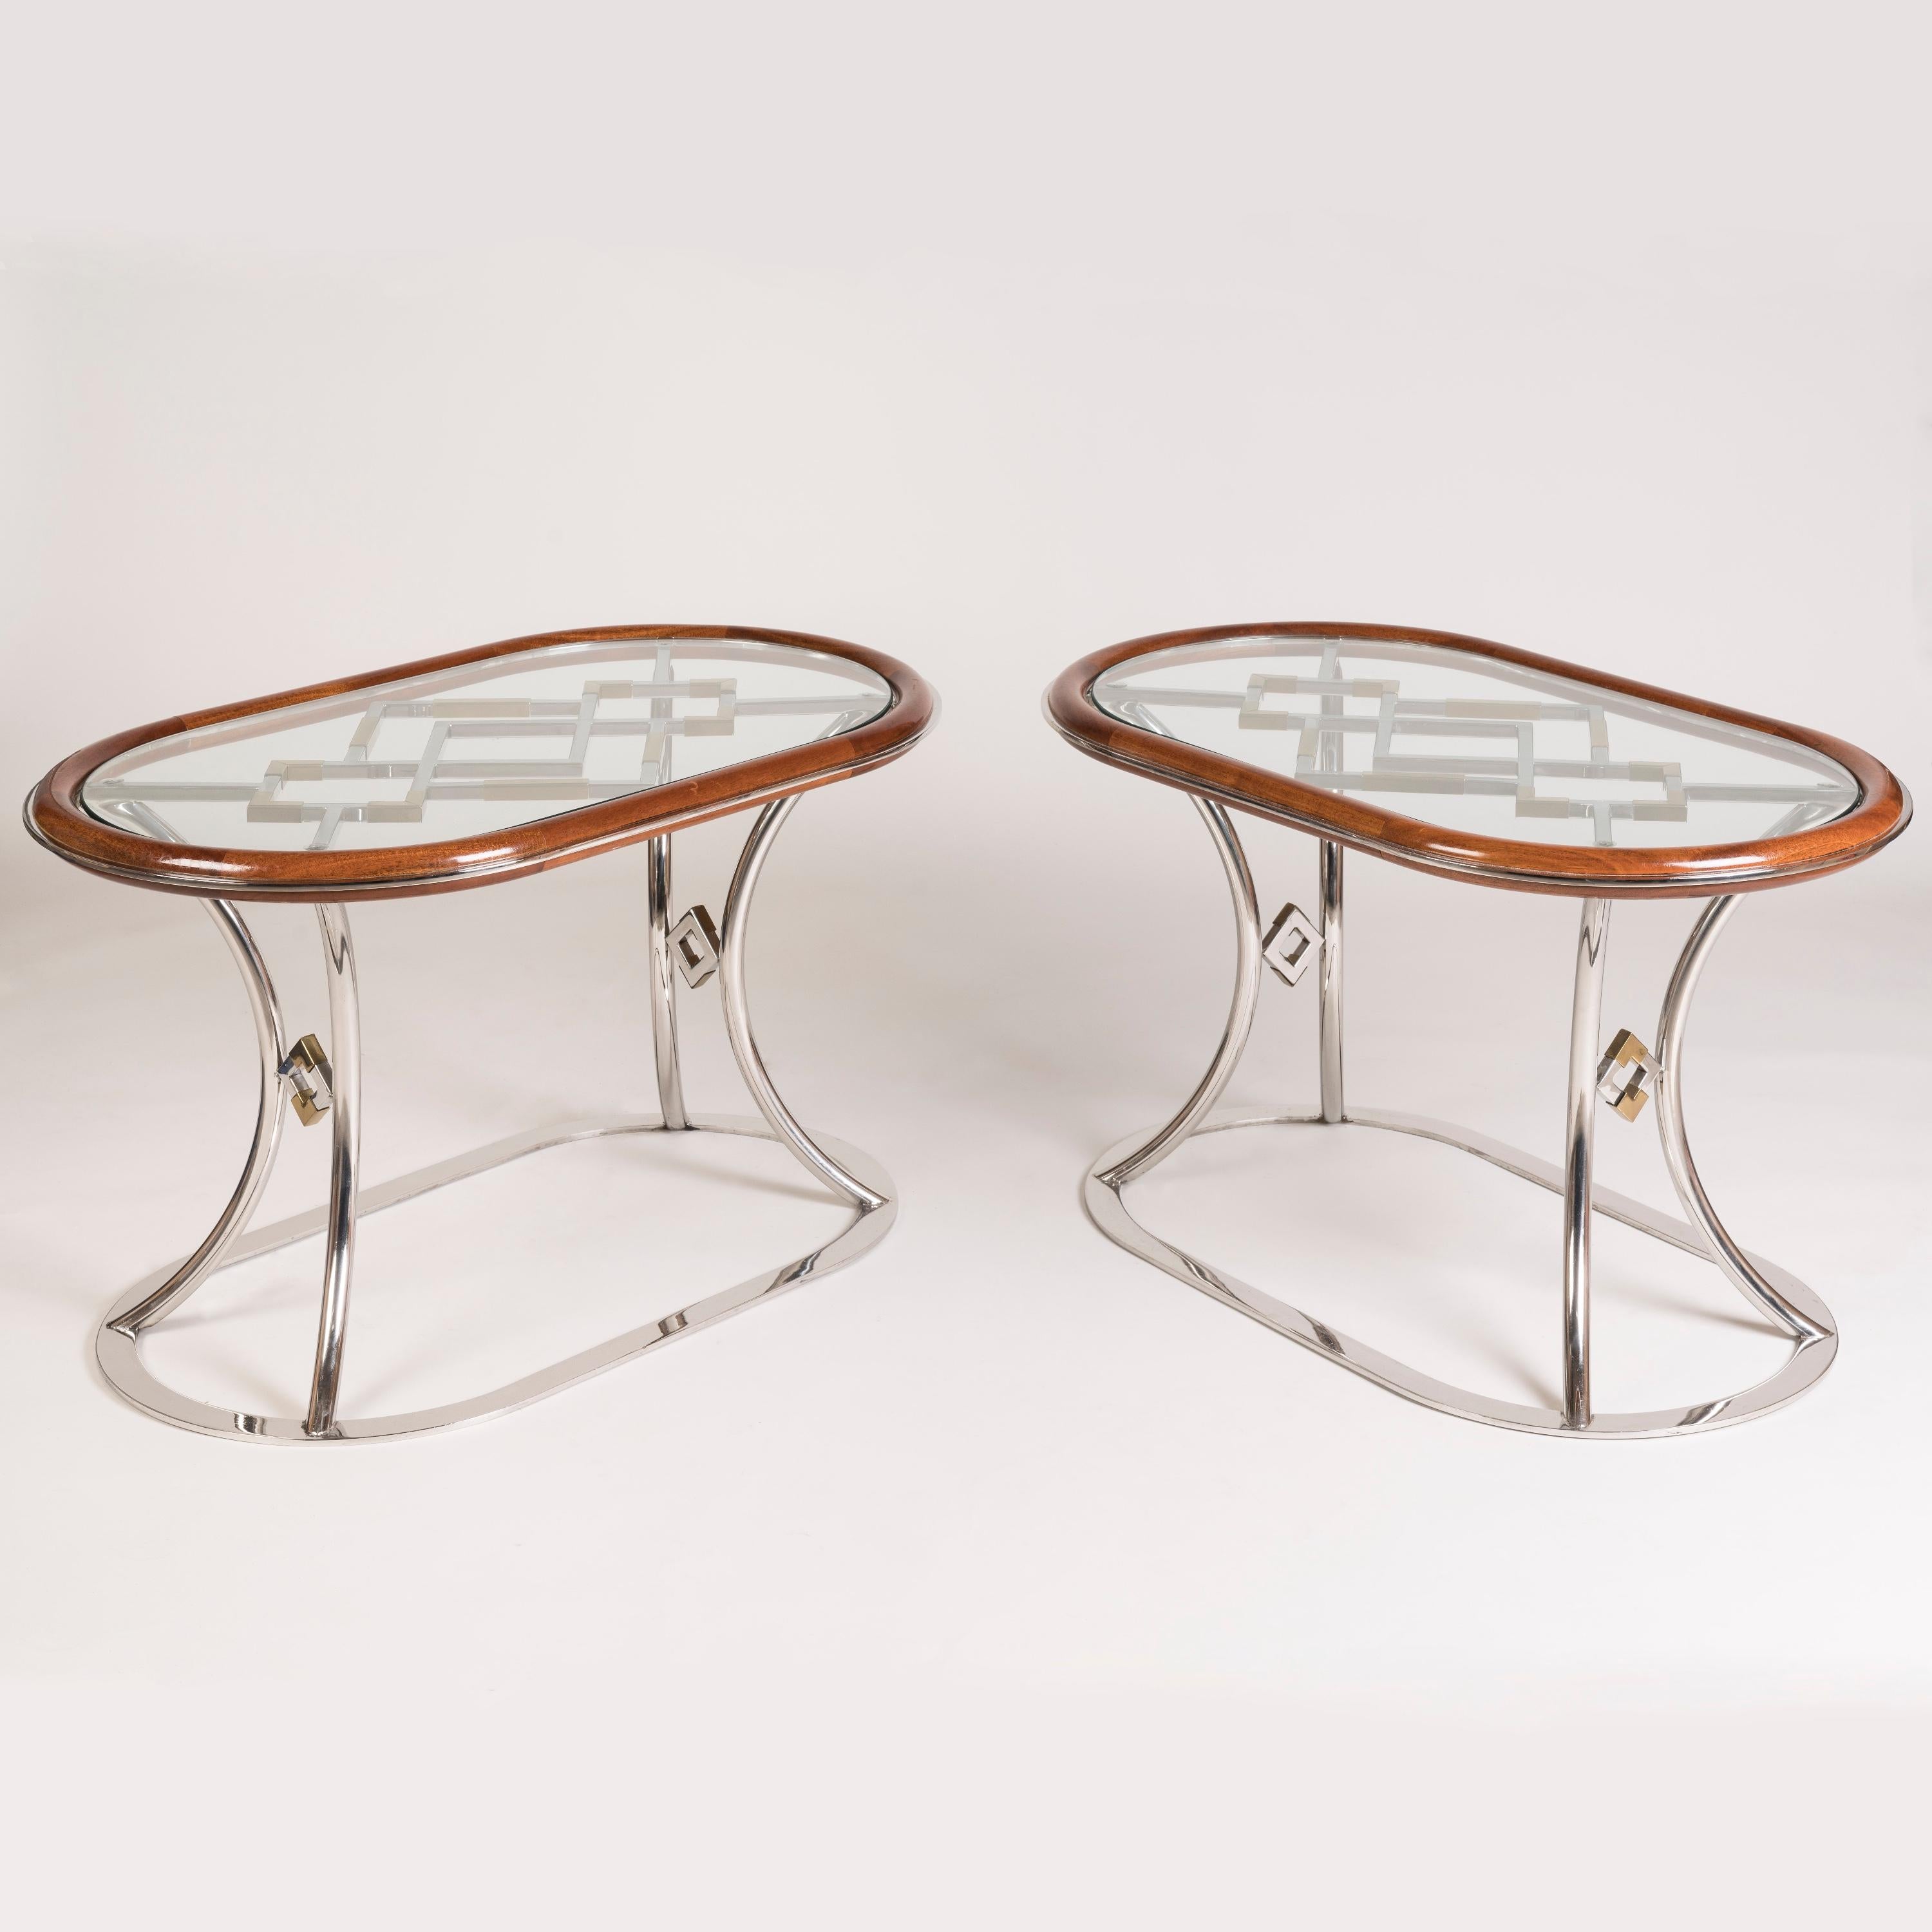 Ein Paar französische Nachkriegs-Couchtische aus Chrom und Messing
Zuschreibung an Maison Jansen

Jeder Tisch hat eine ovale Glasplatte und einen Mahagonirand. Er steht auf einem verchromten Sockel mit geschwungenen Beinen und offenem Spalierdesign